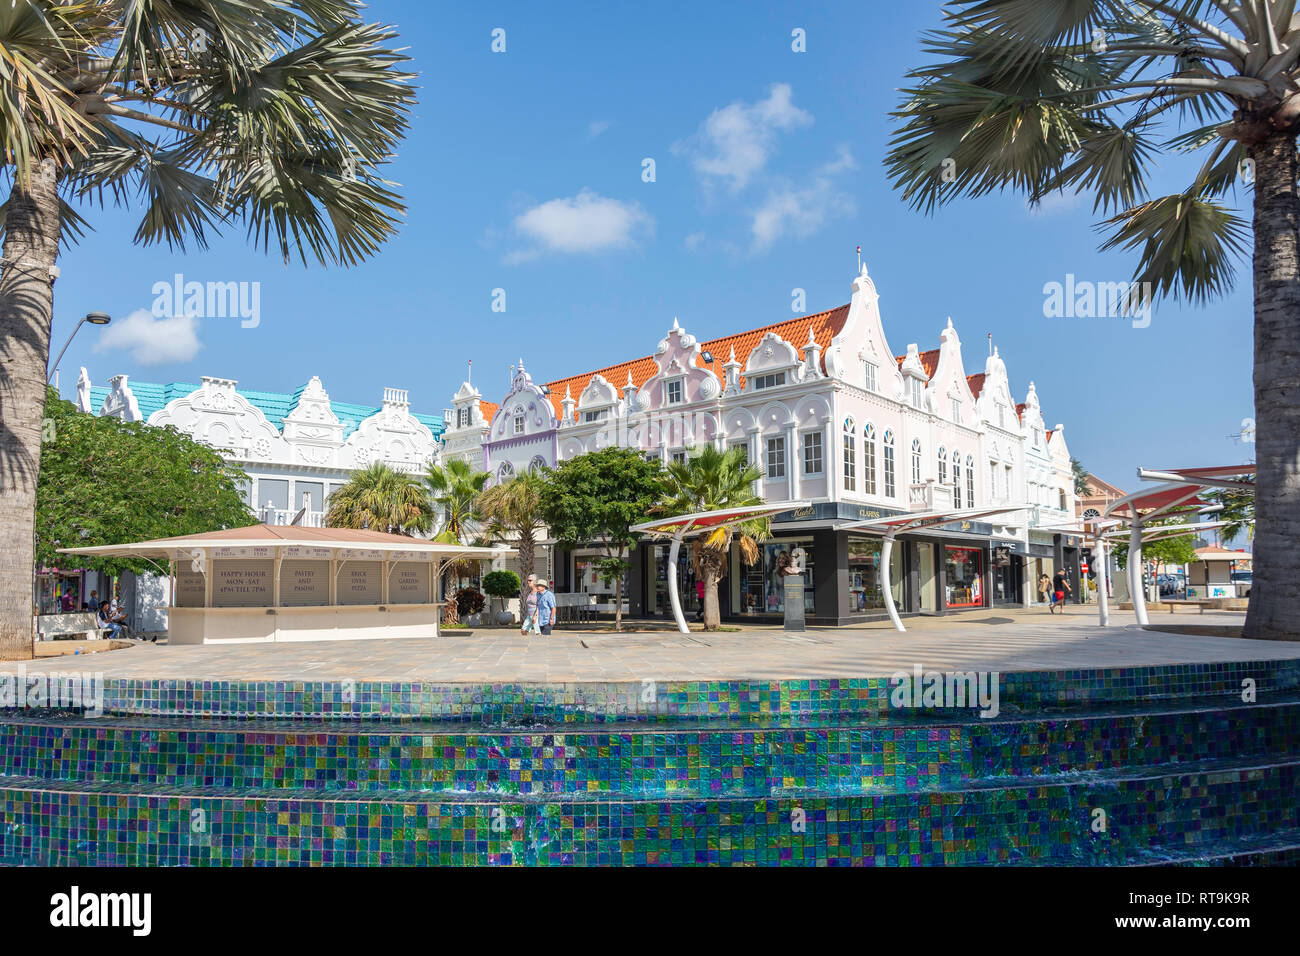 Plaza Daniel Leo che mostra la fontana e olandese di edifici in stile coloniale, Oranjestad, Aruba, Isole ABC, Leeward Antilles, dei Caraibi Foto Stock